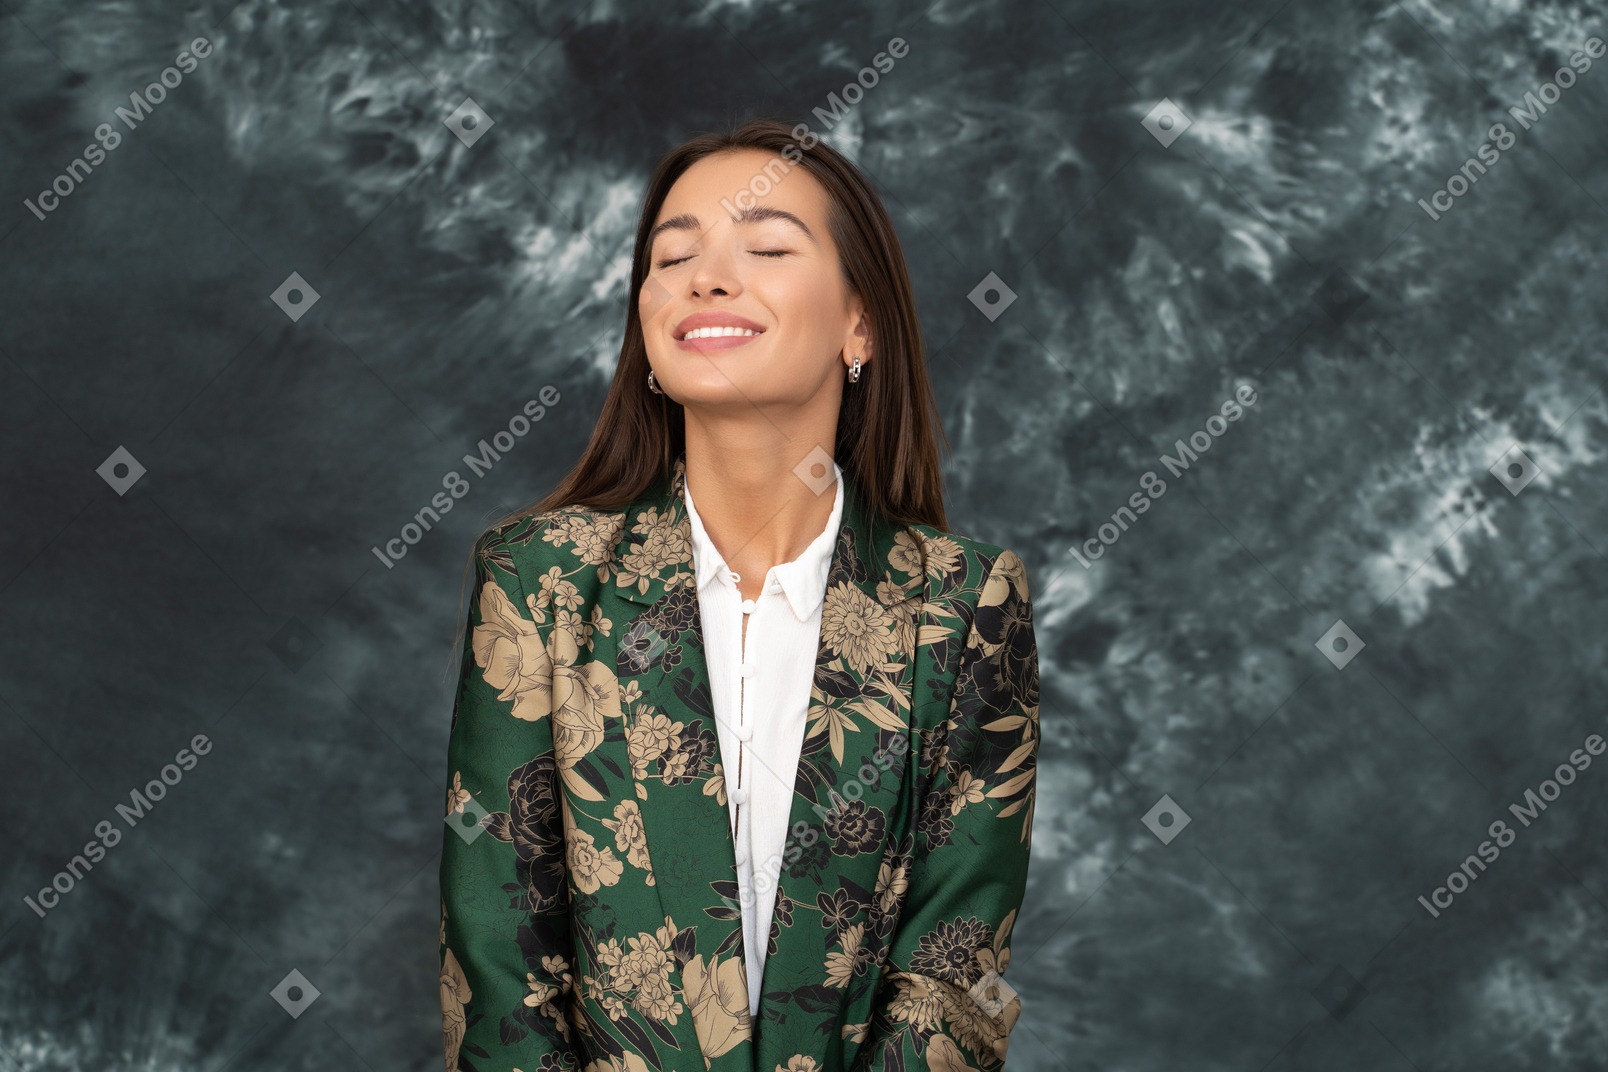 Una mujer con chaqueta verde japonesa sonriendo ampliamente con los ojos cerrados